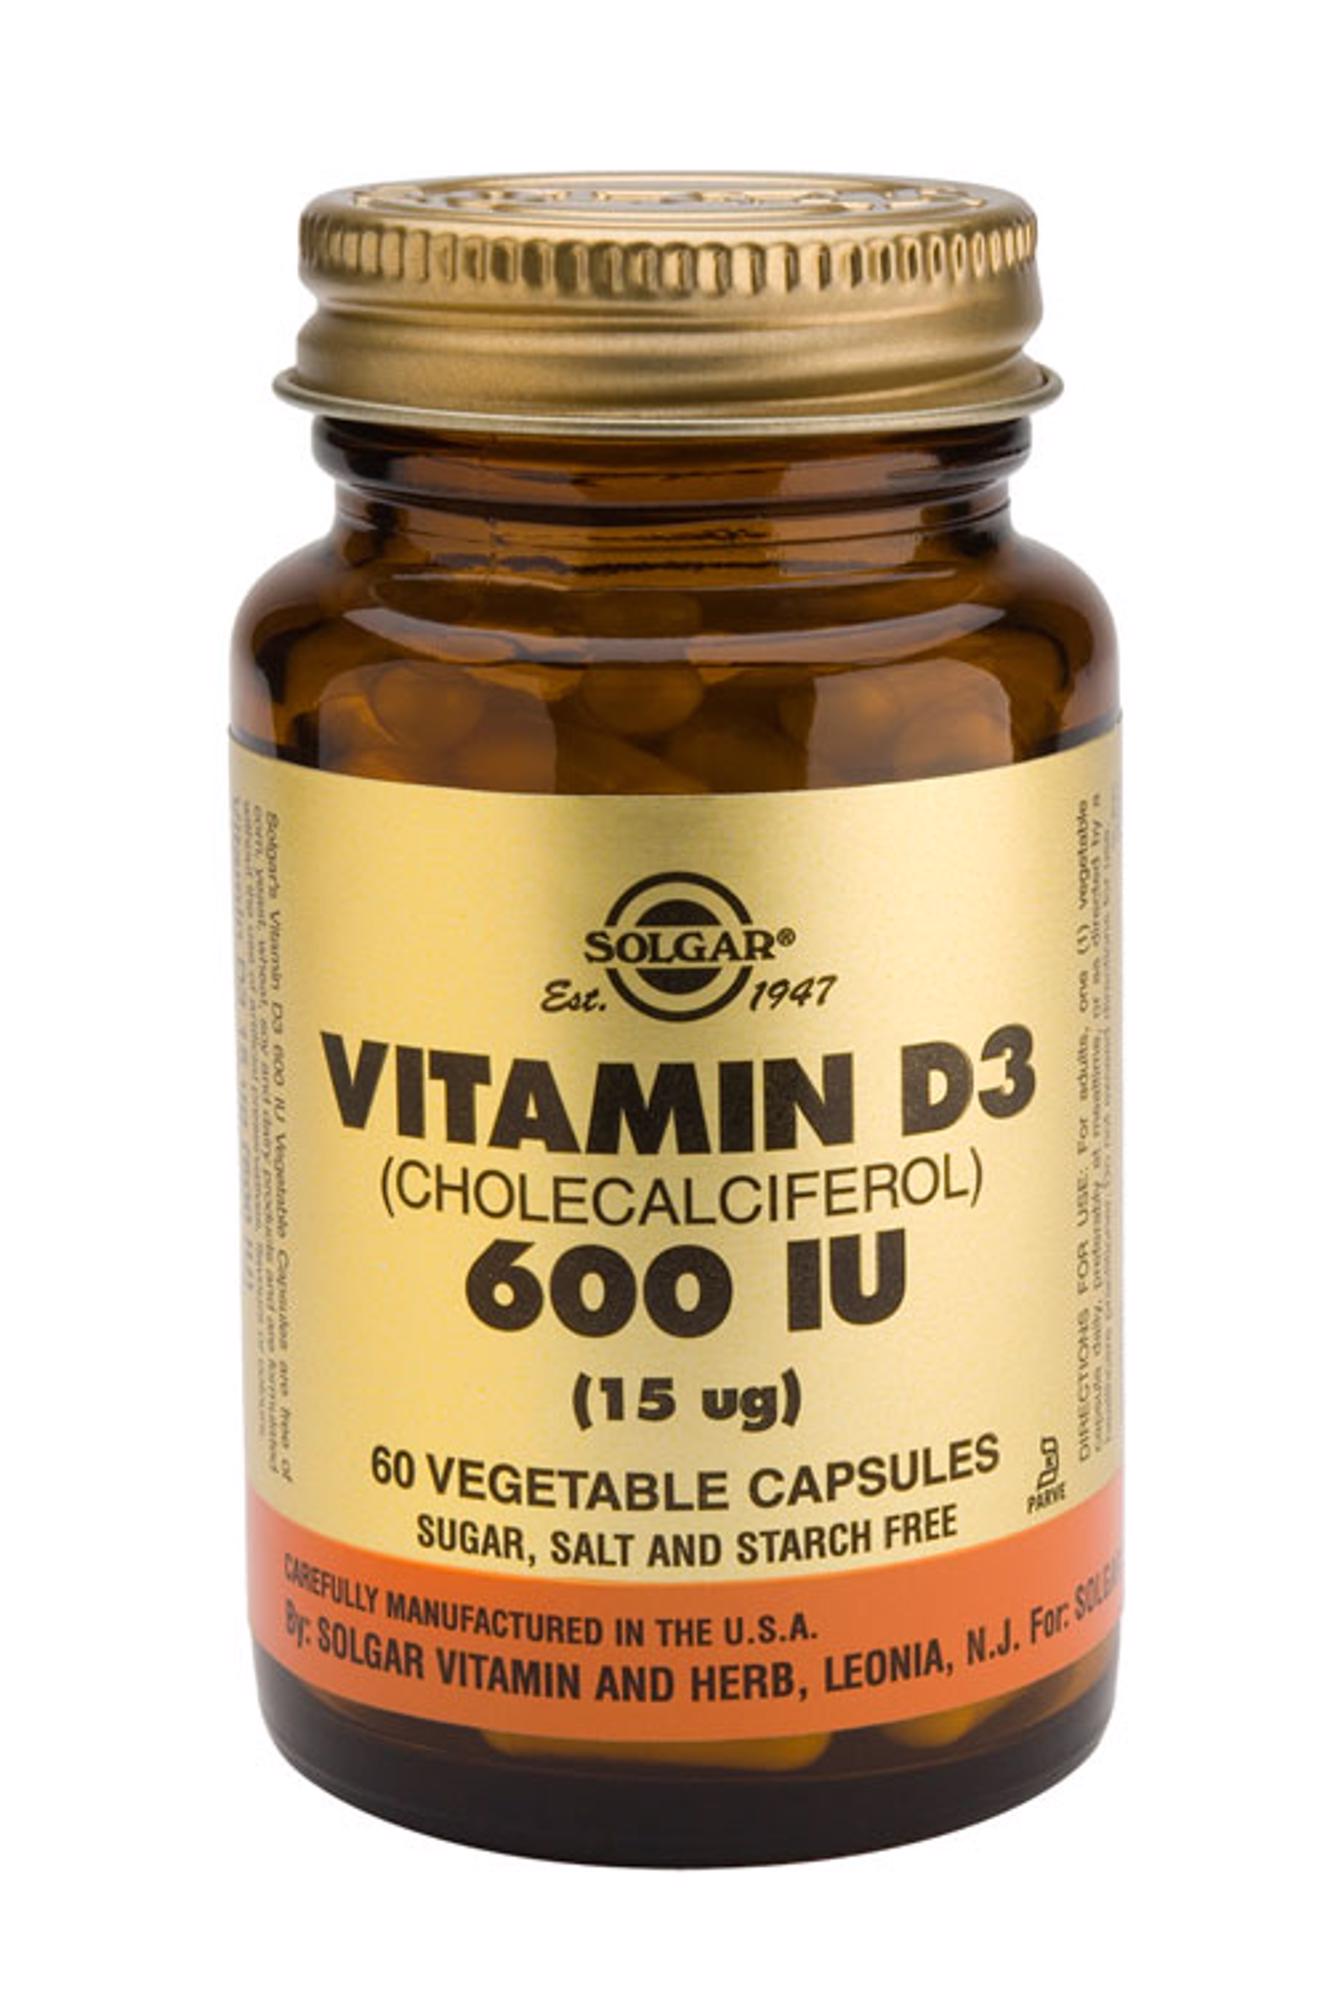 Solgar Vitamin D 3 15 Ug 600 Iu 60 Caps Van Solgar Erica